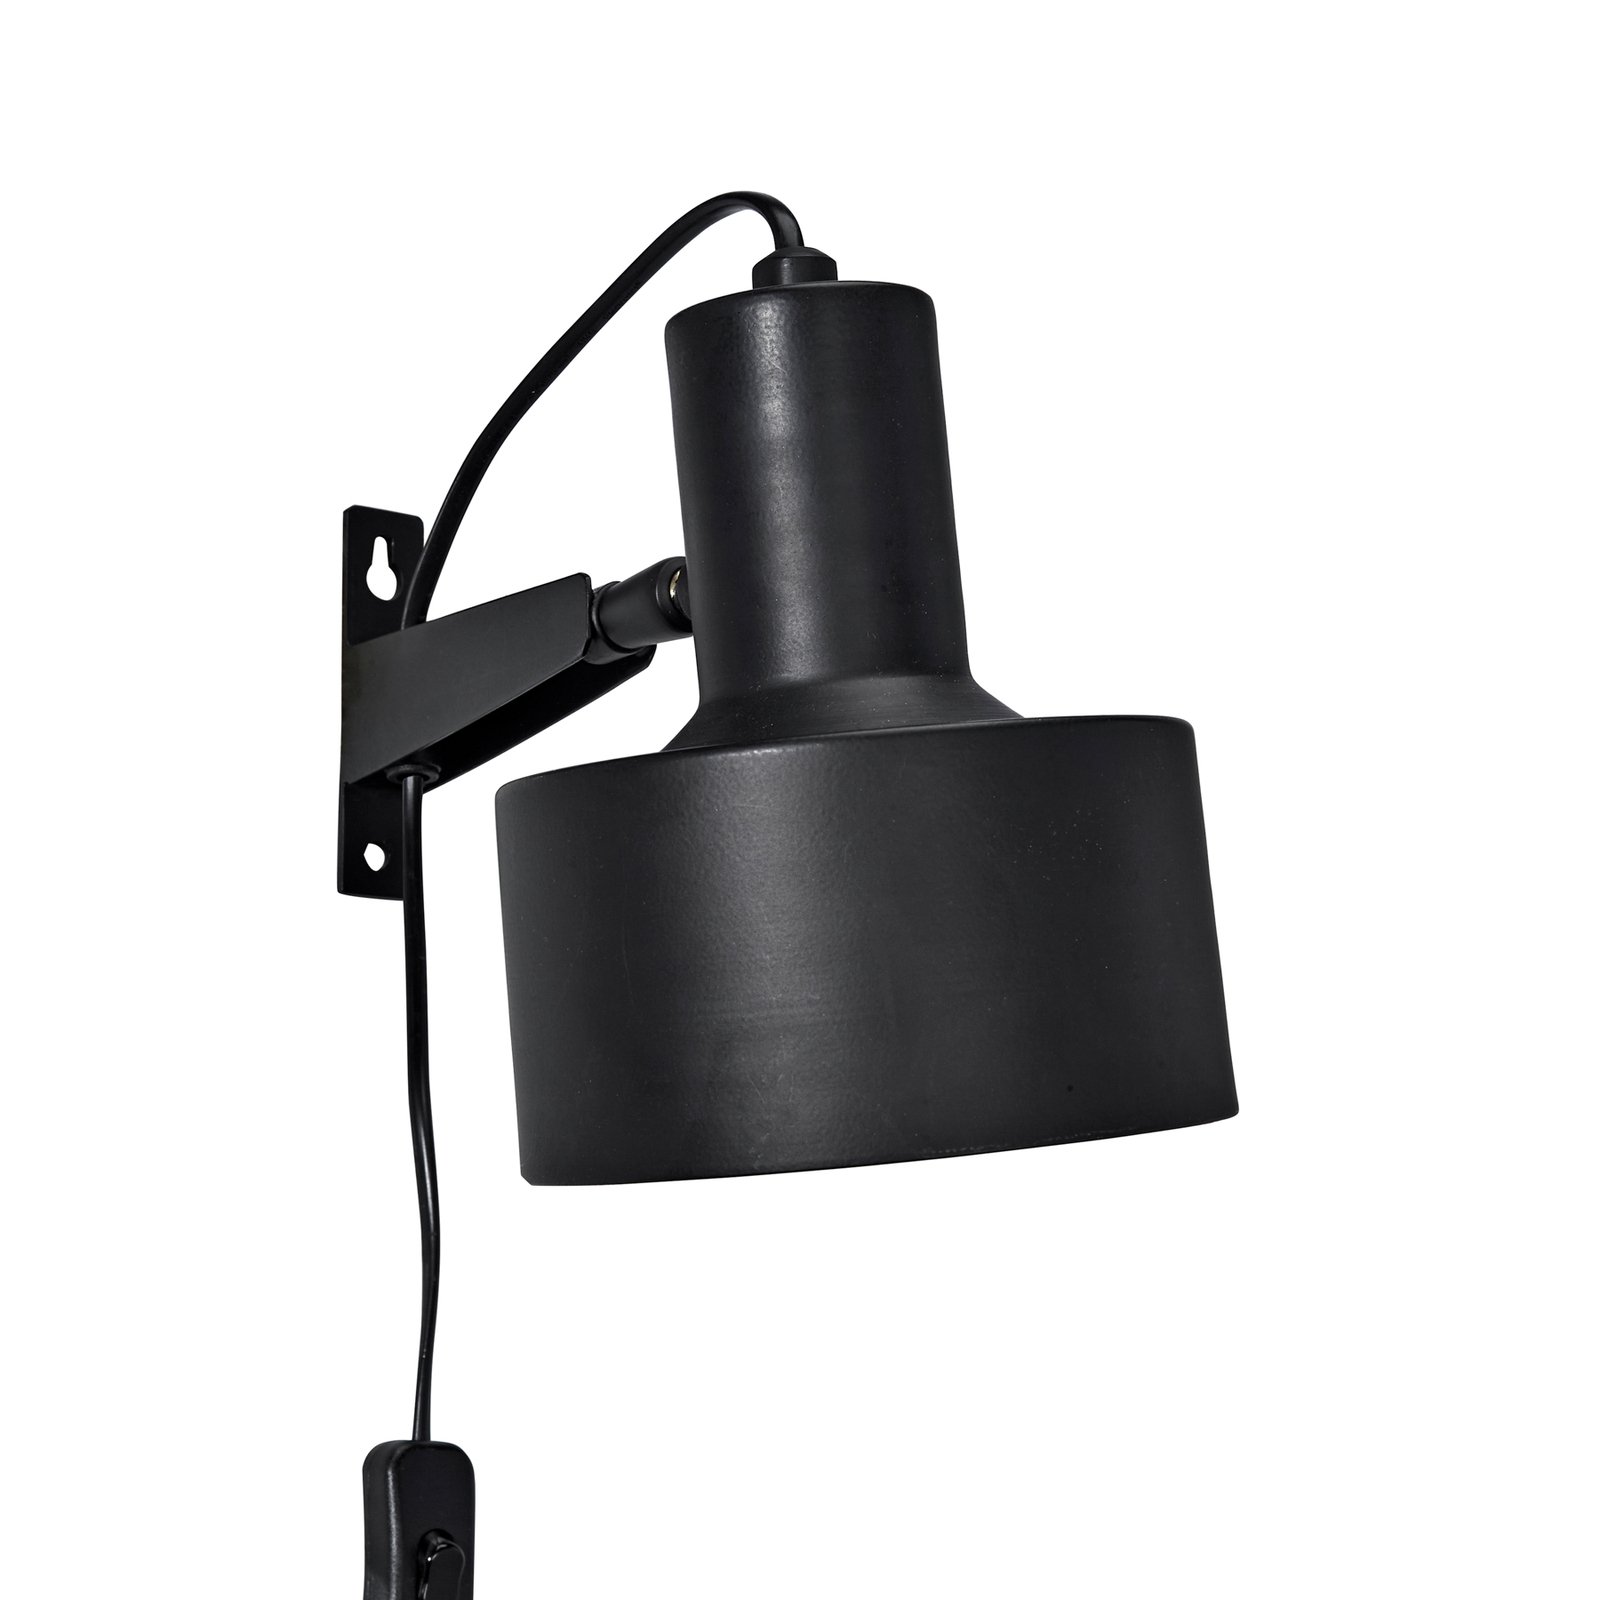 PR Home Solo wandlamp met stekker, mat zwart